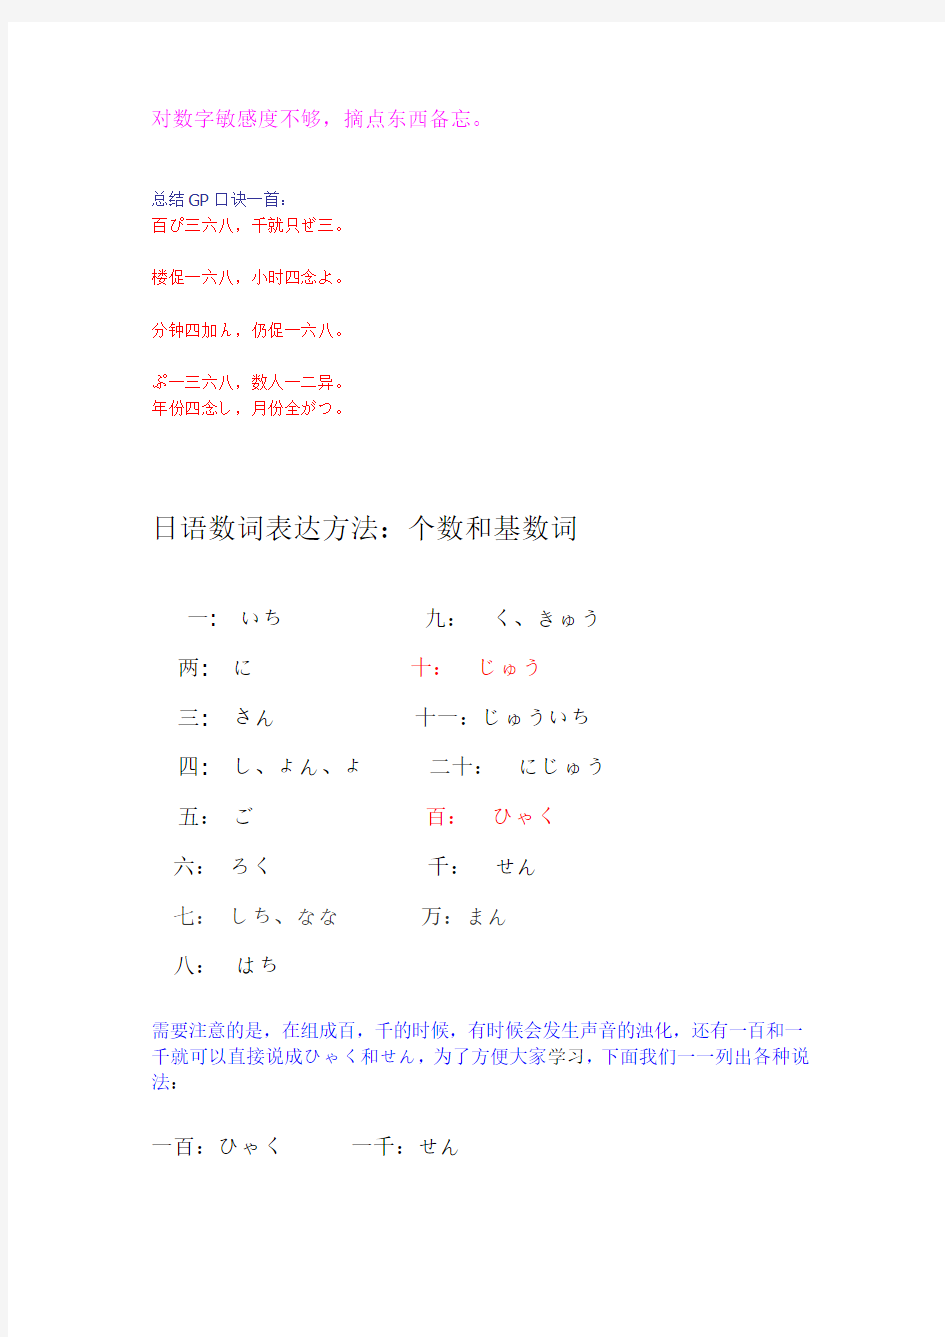 日语数词整理